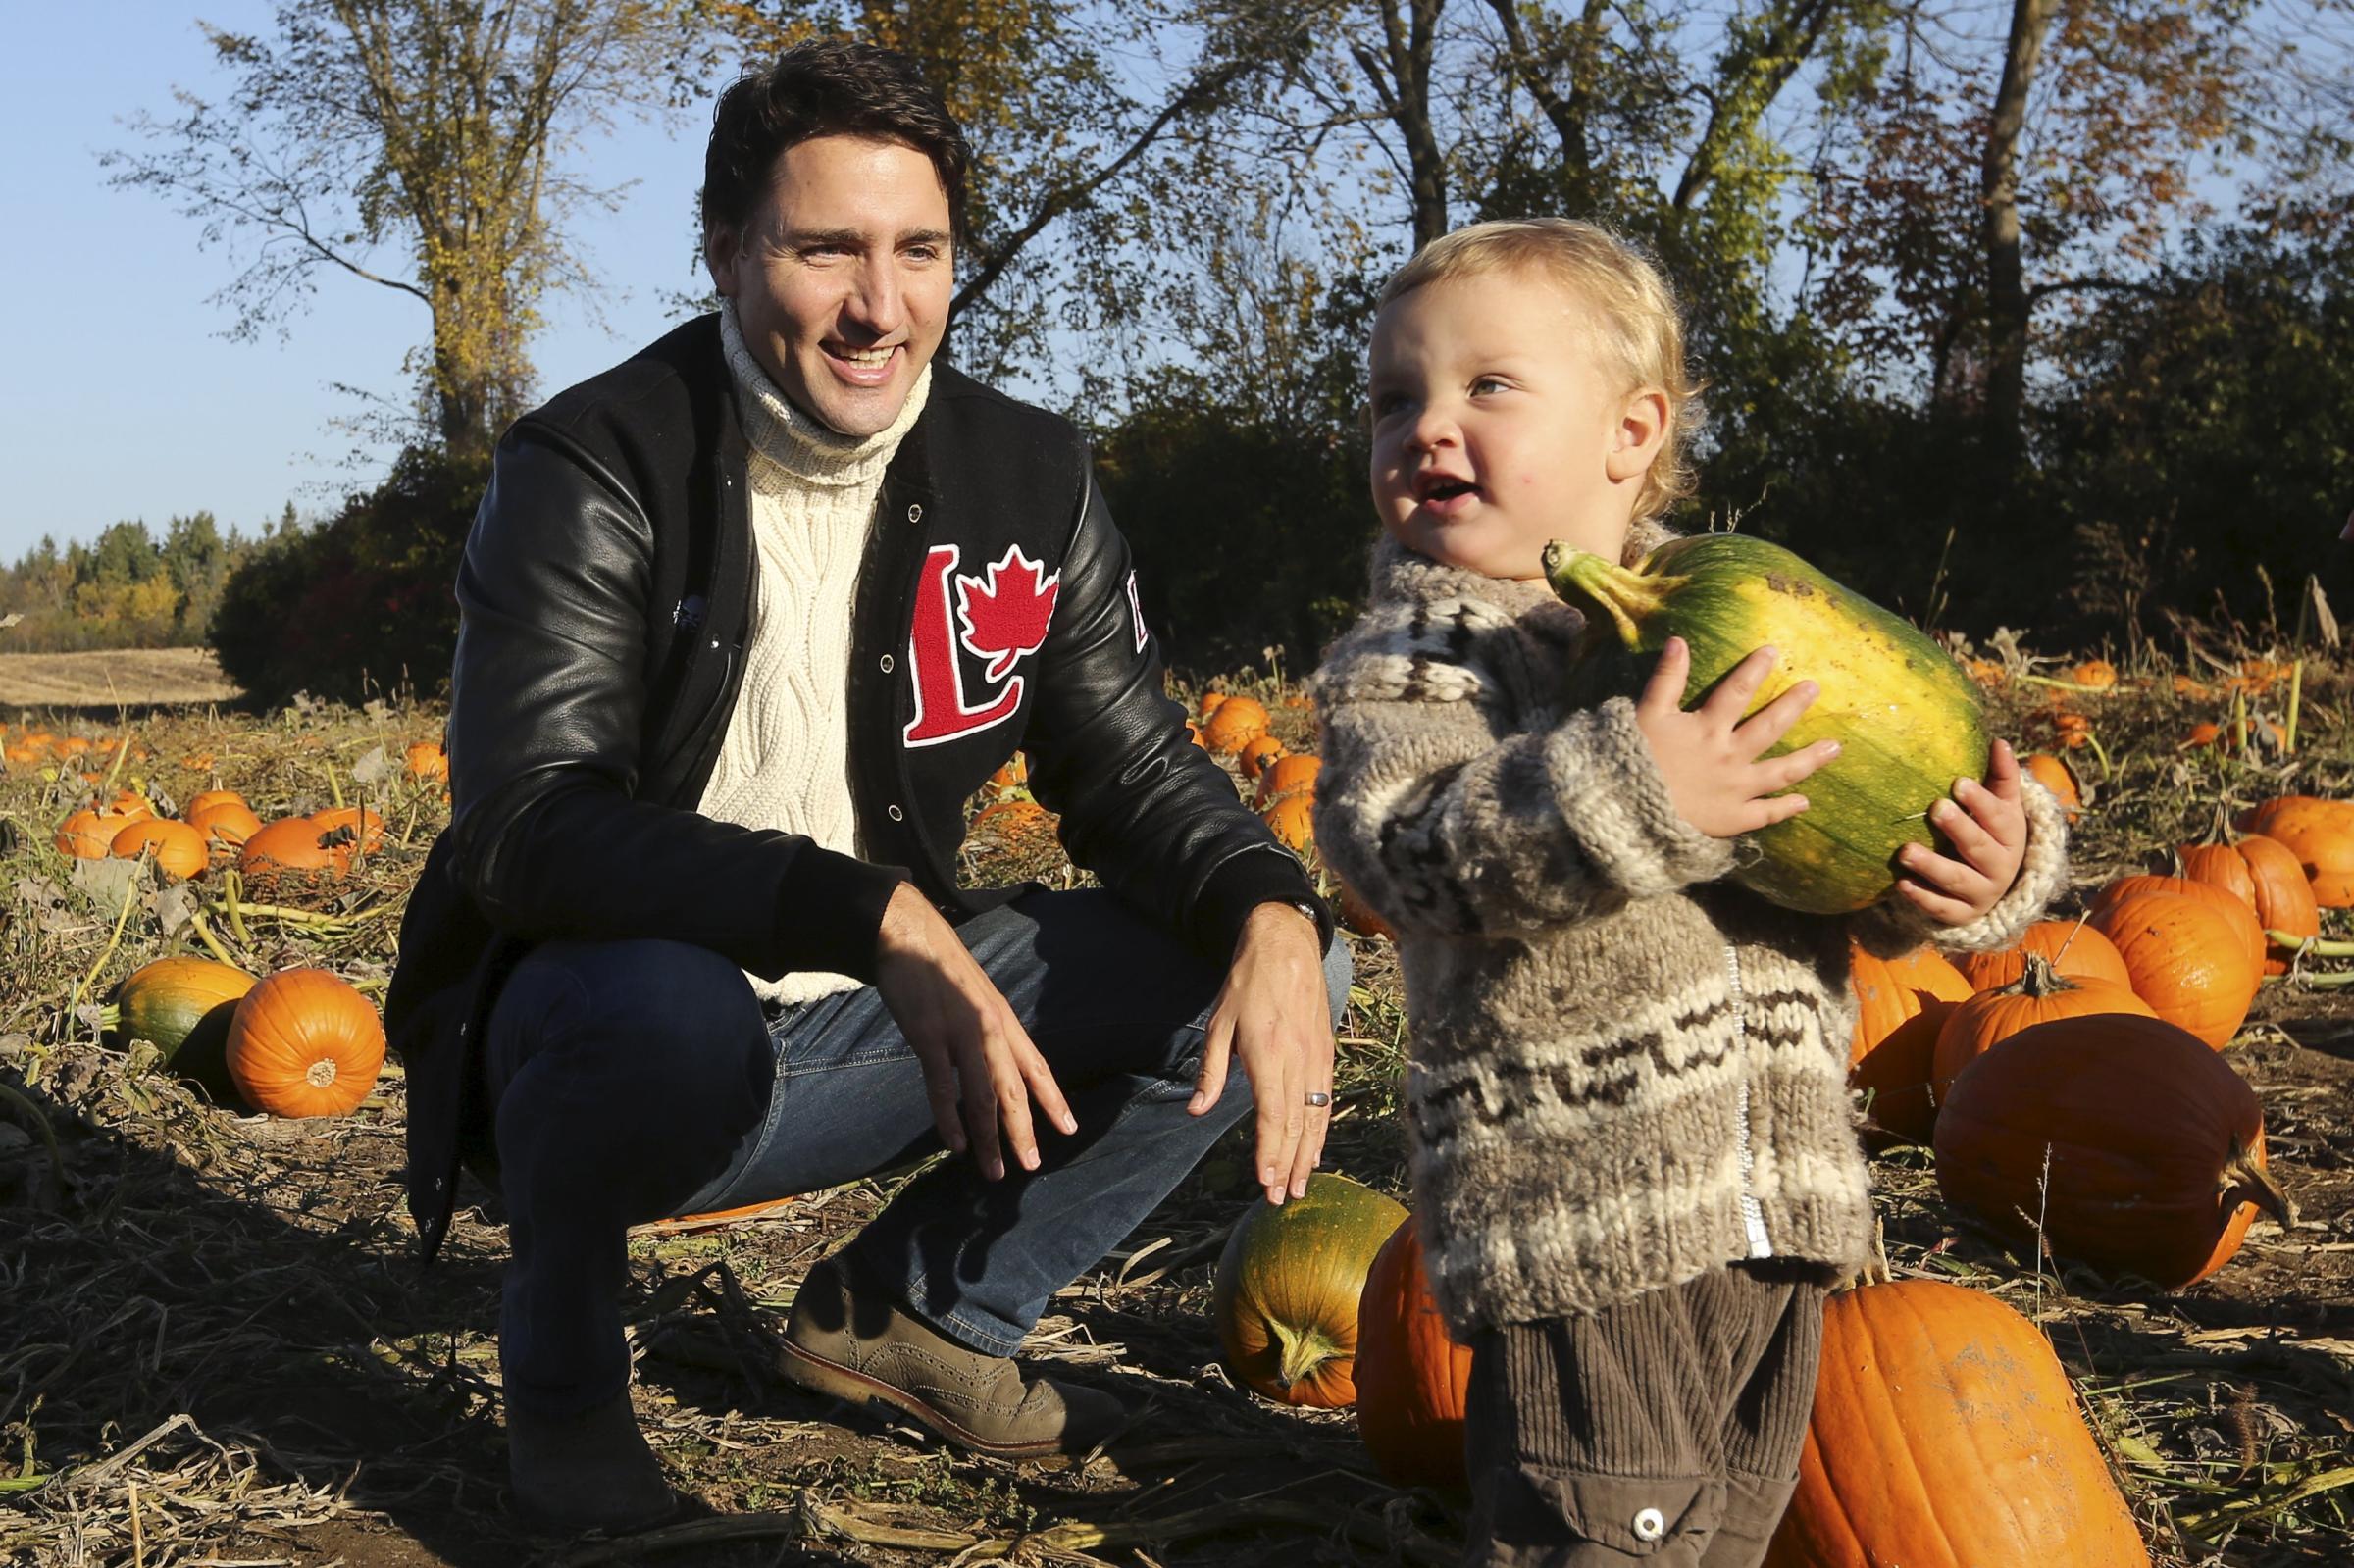 Liberal leader Trudeau watches as his son Hadrien carries a pumpkin while touring a pumpkin patch in Gatineau